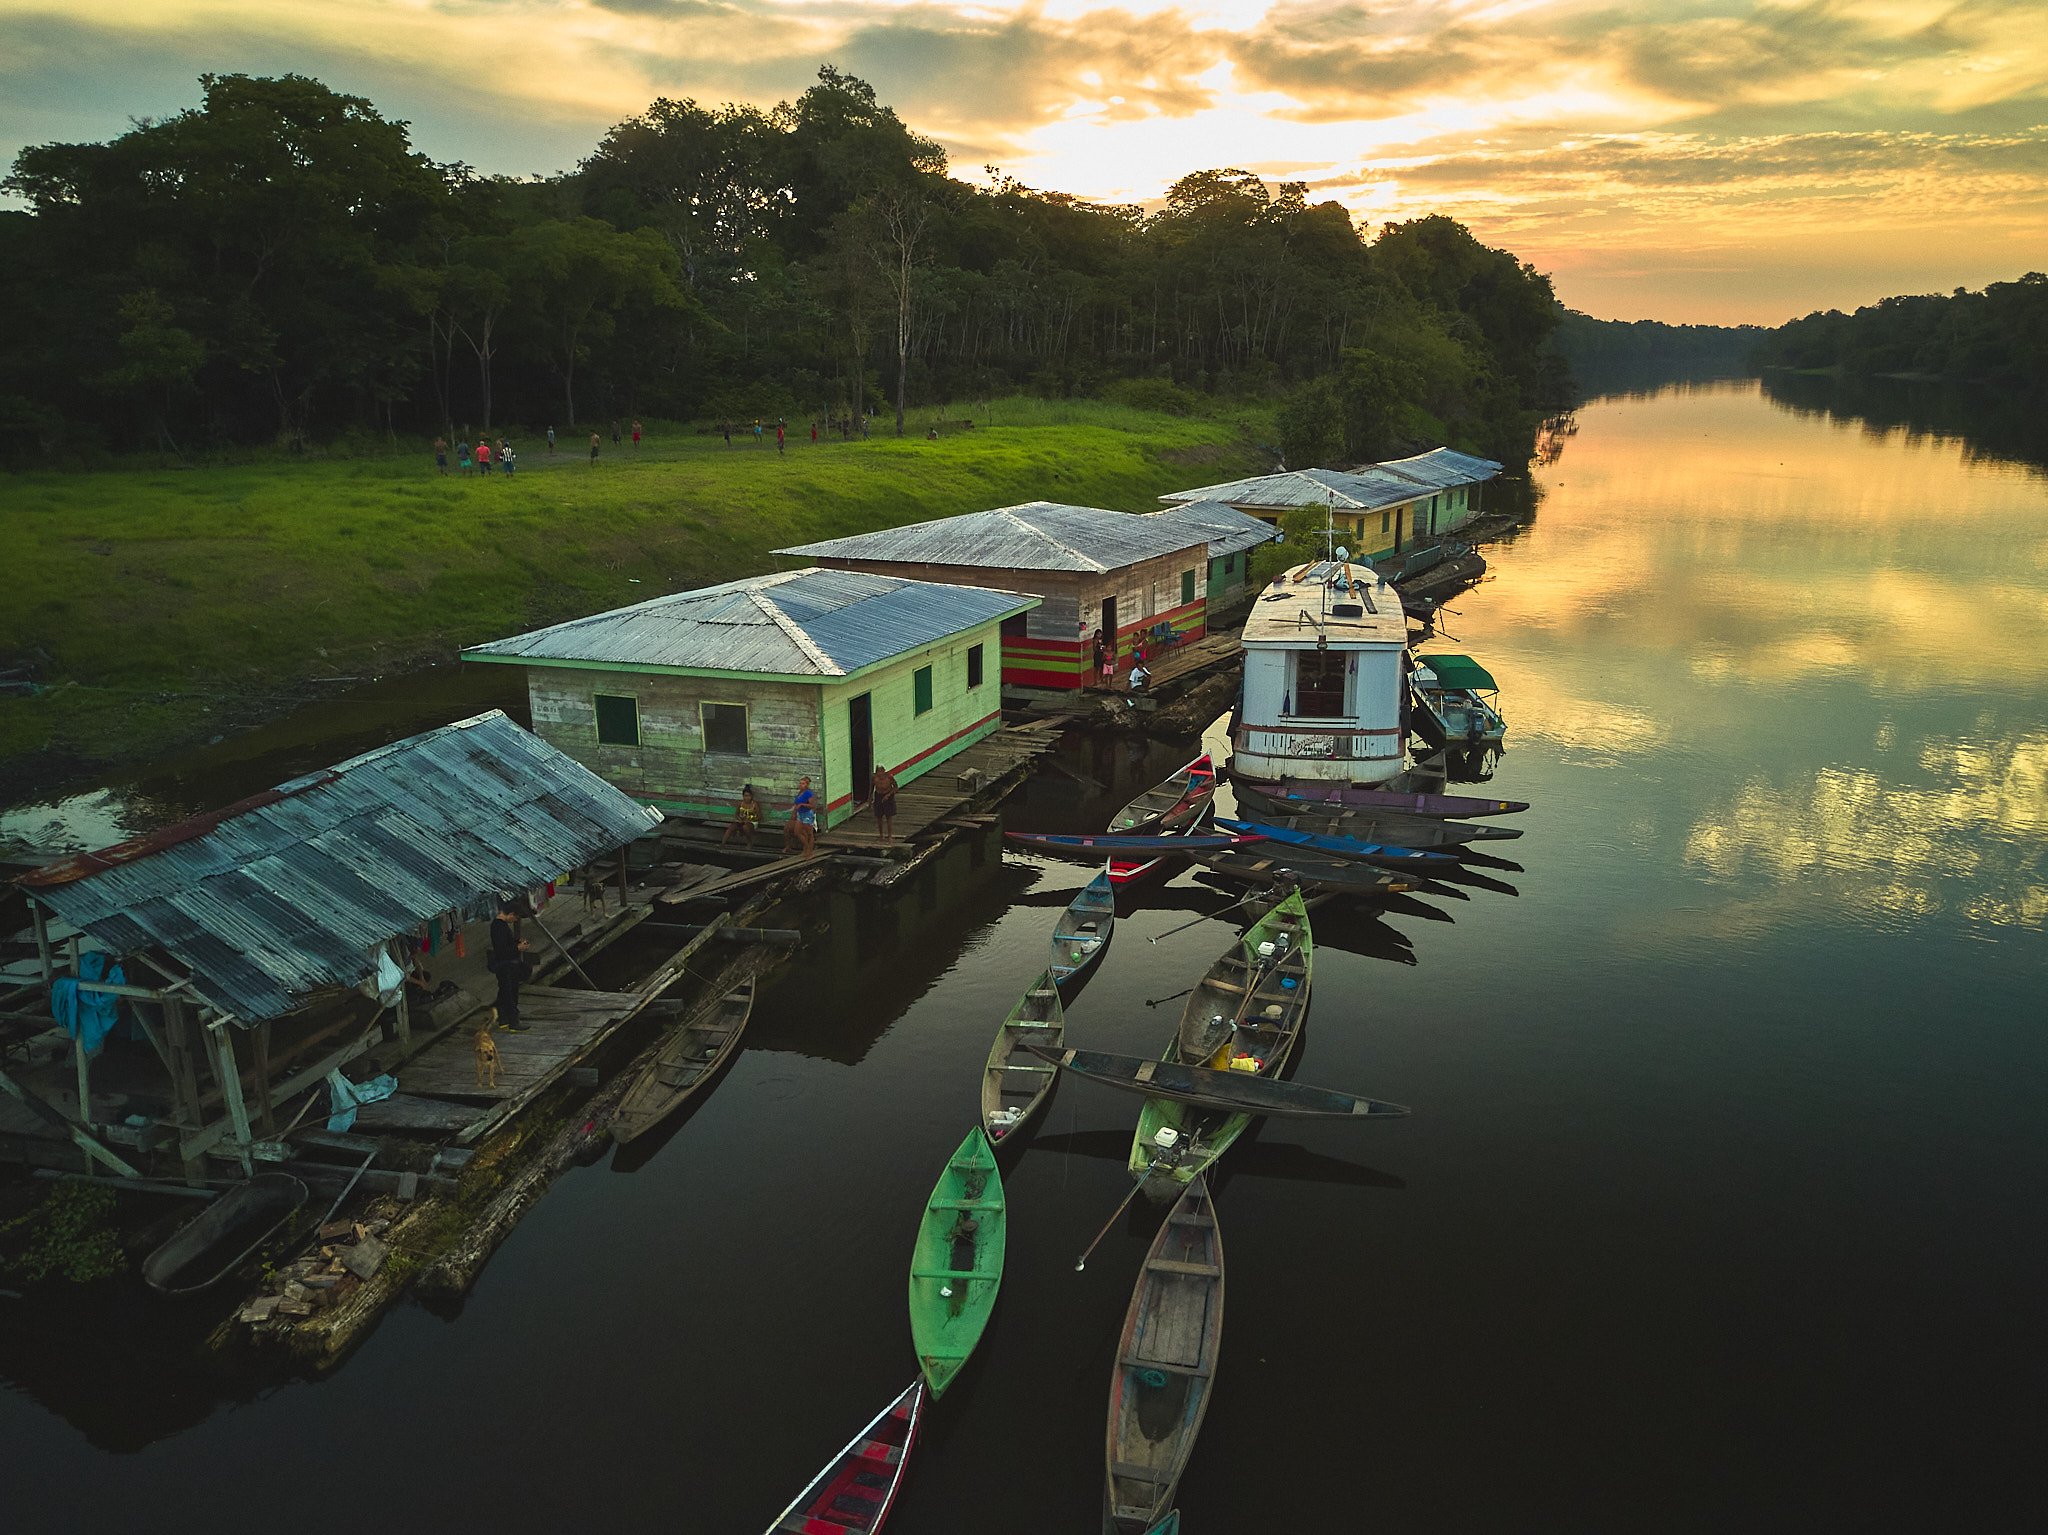 Casa flutuante, barcos e canoas - crédito Rodolfo Pongelupe